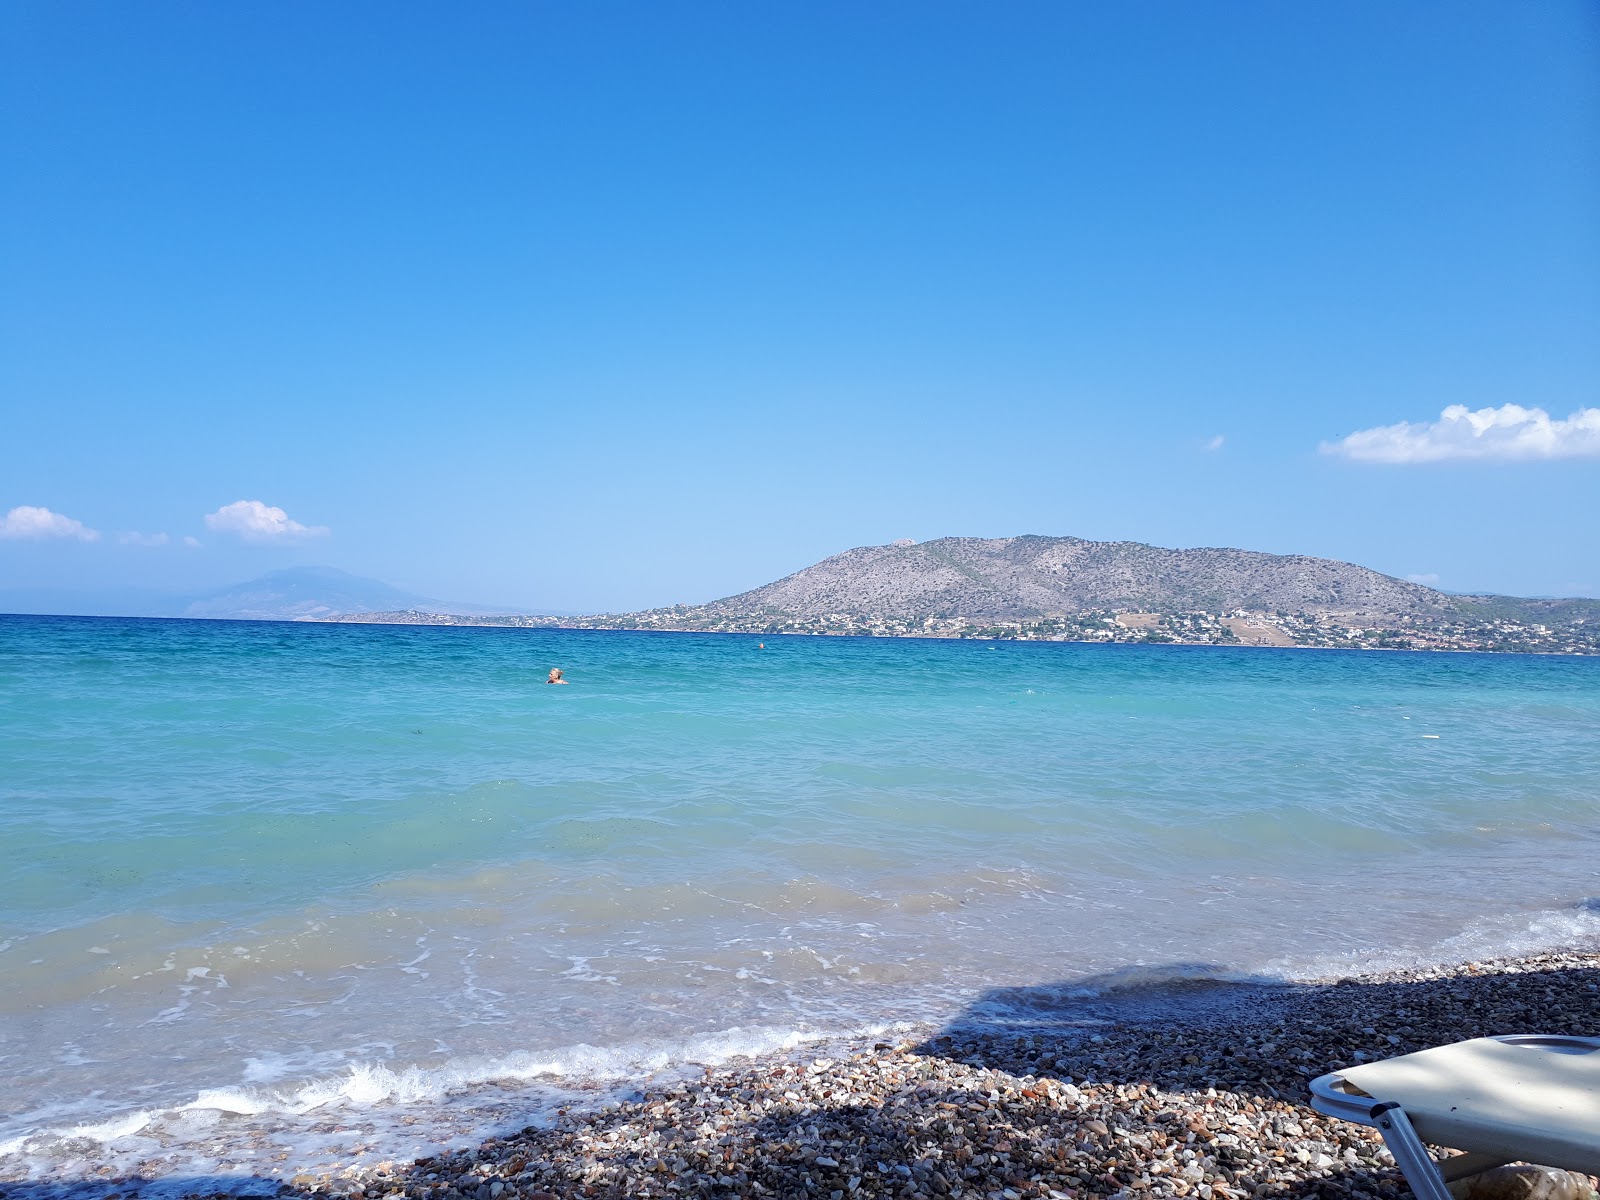 Fotografie cu Leof. Eanteiou beach cu o suprafață de pietricel alb fin